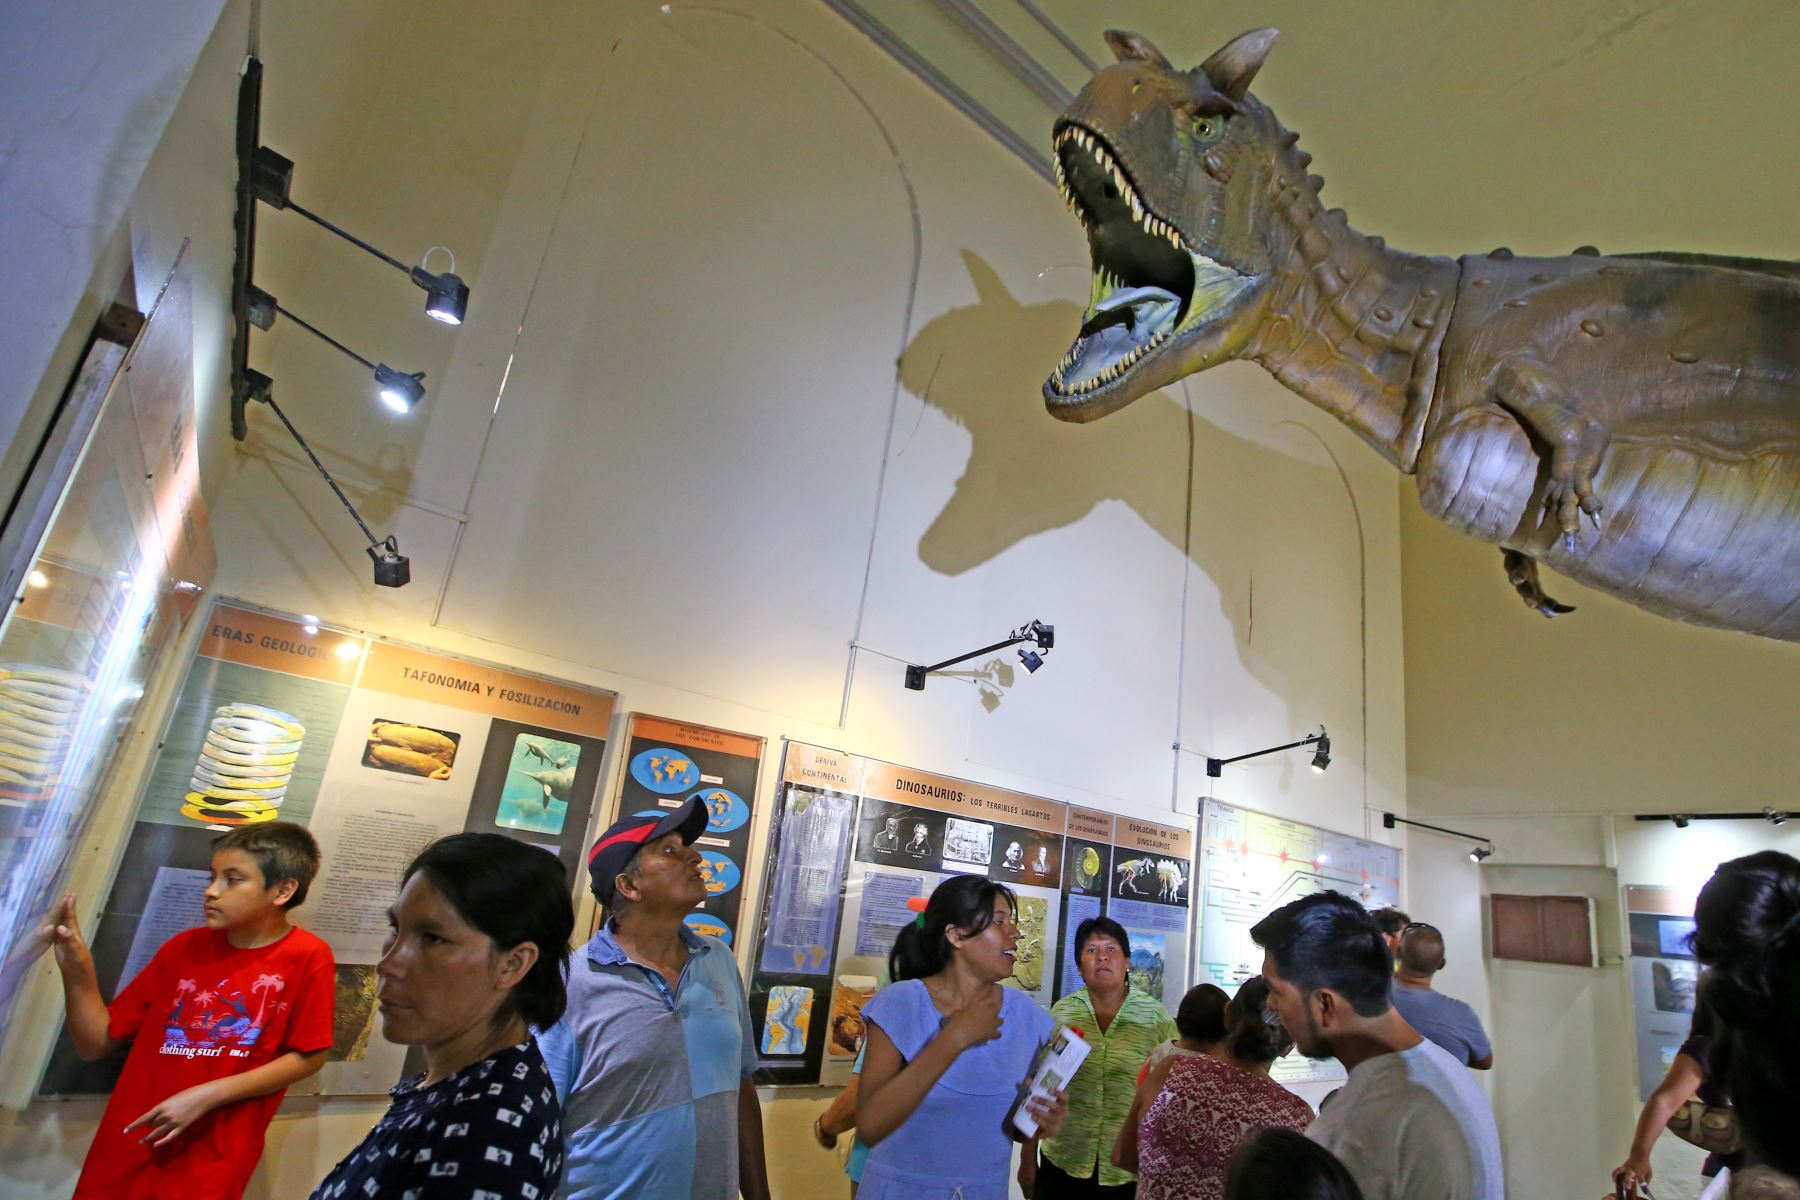 Difícil no impresionarse con la imponente figura del Taurosaurus, llamado así por los dos cuernos que poseía. Se exhibe en el Museo de Historia Natural de San Marcos. Foto: ANDINA/Melina Mejía